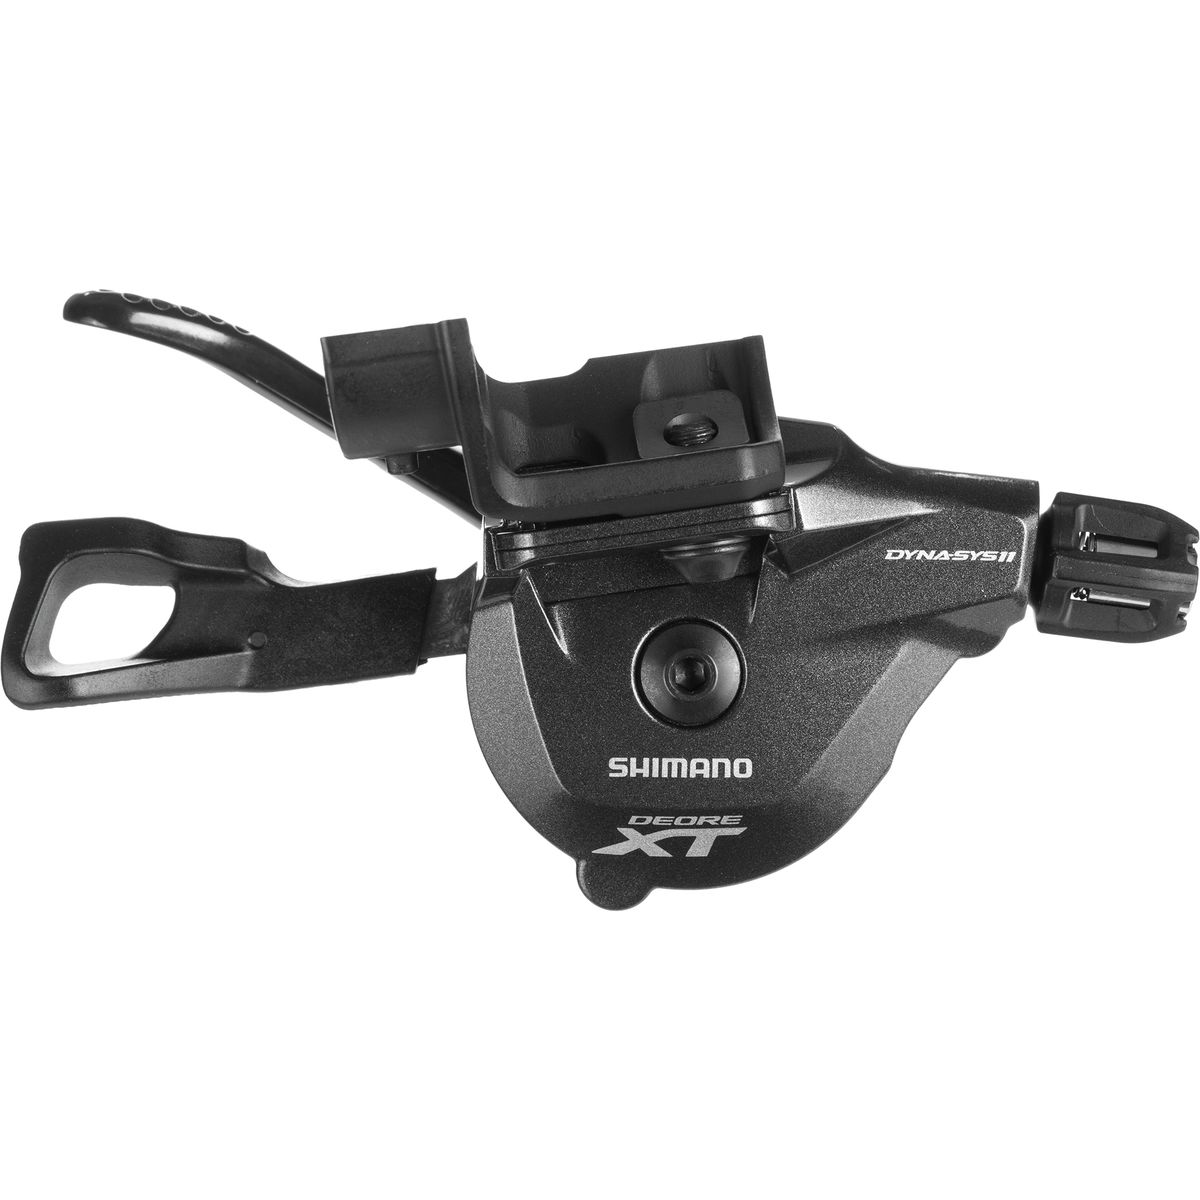 rijk Pelgrim Netjes Shimano XT SL-M8000 I-Spec II Trigger Shifter - Components